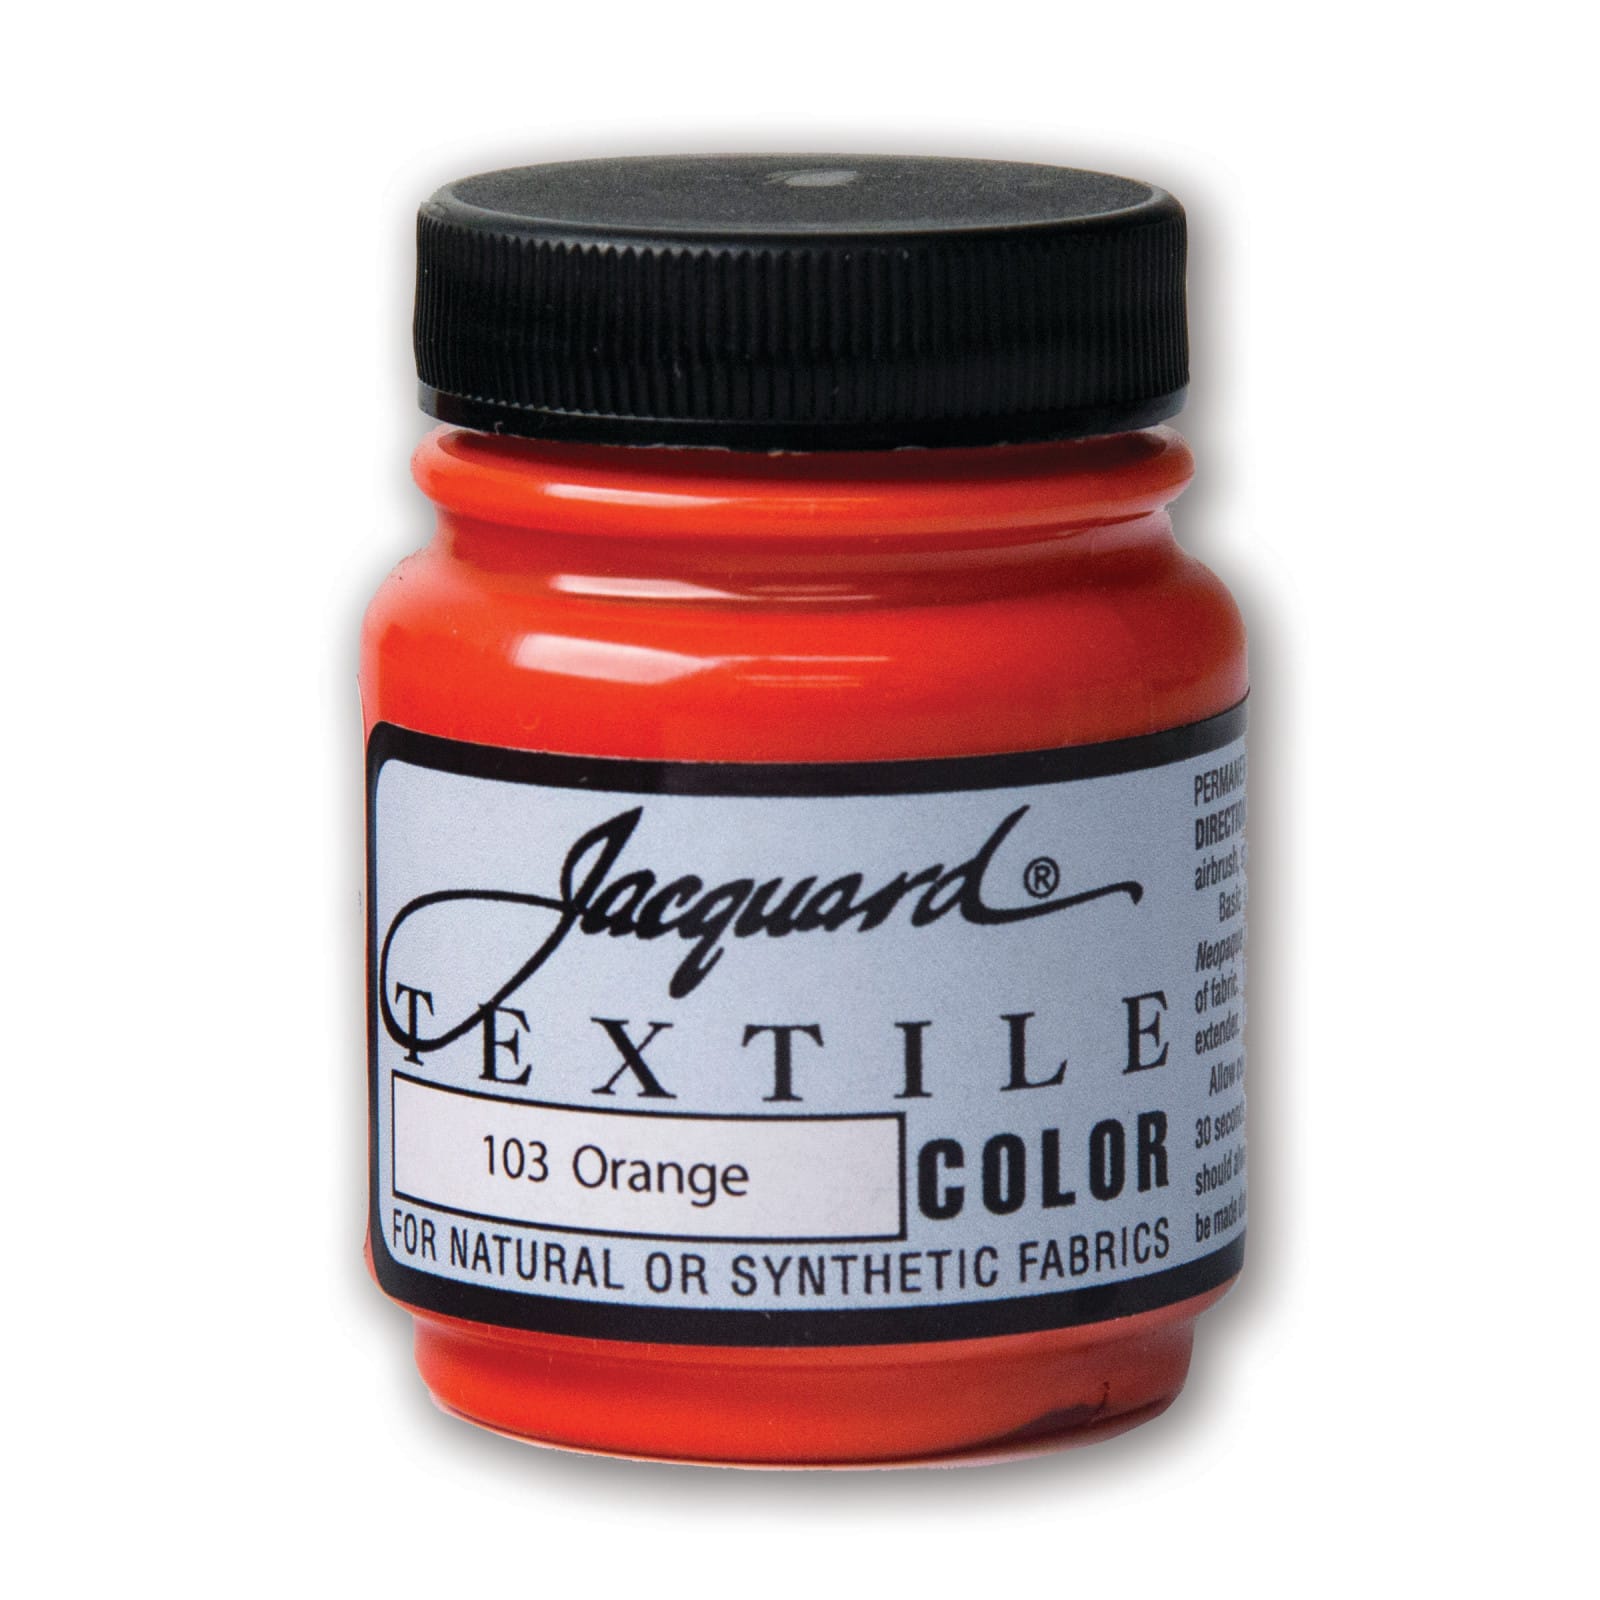 Jacquard® Textile Color, 2.25oz.